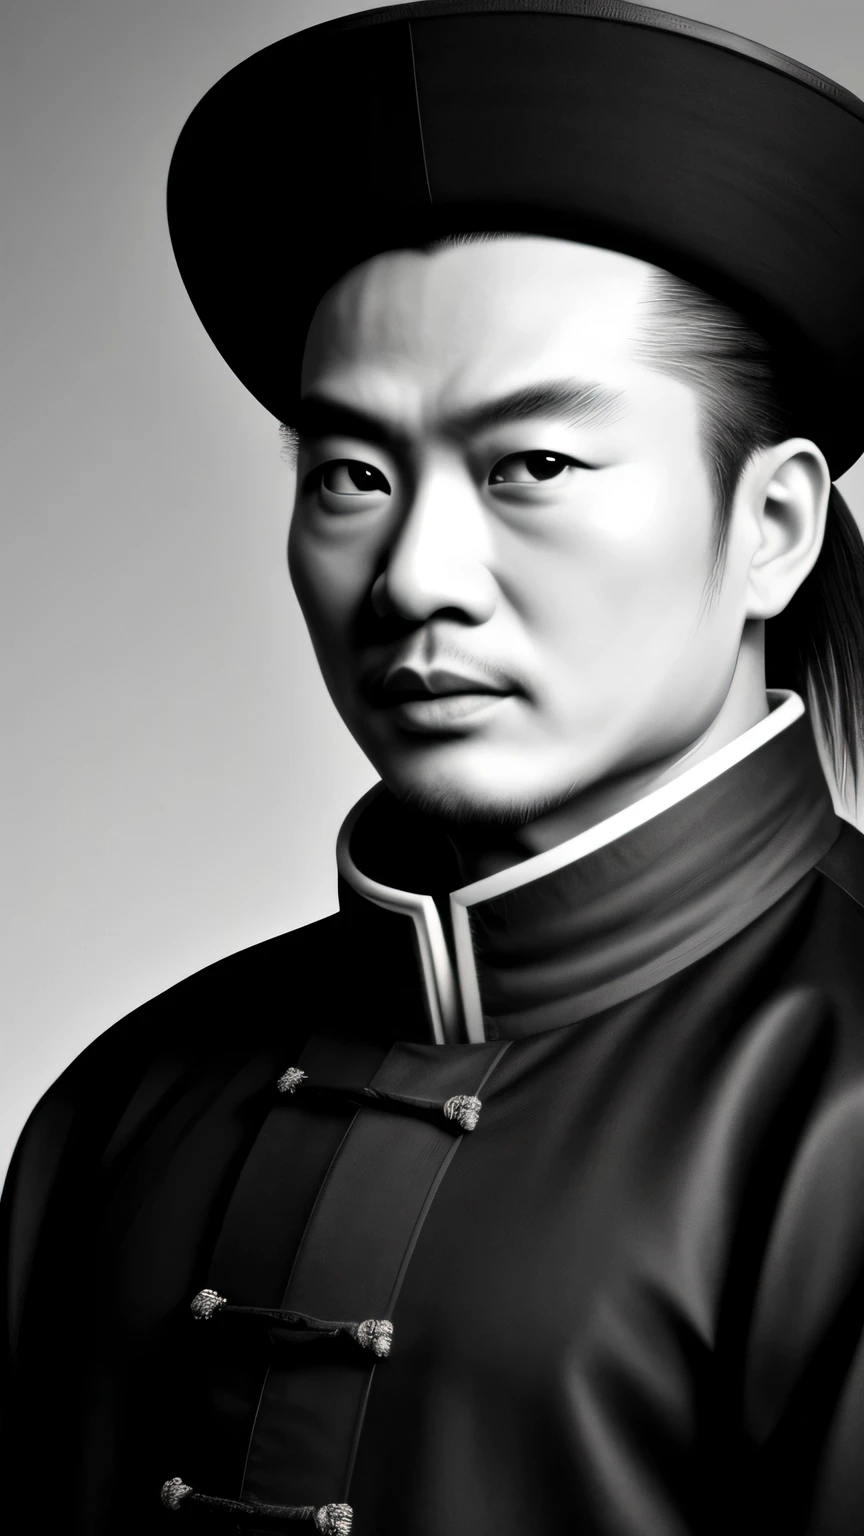 ((Meisterwerk)),((höchste Qualität)),((hohe Detailgenauigkeit)), Zhuge Liang Kong Ming,Schwarz-Weiß-Porträt,der Hintergrund ist dunkelgrau